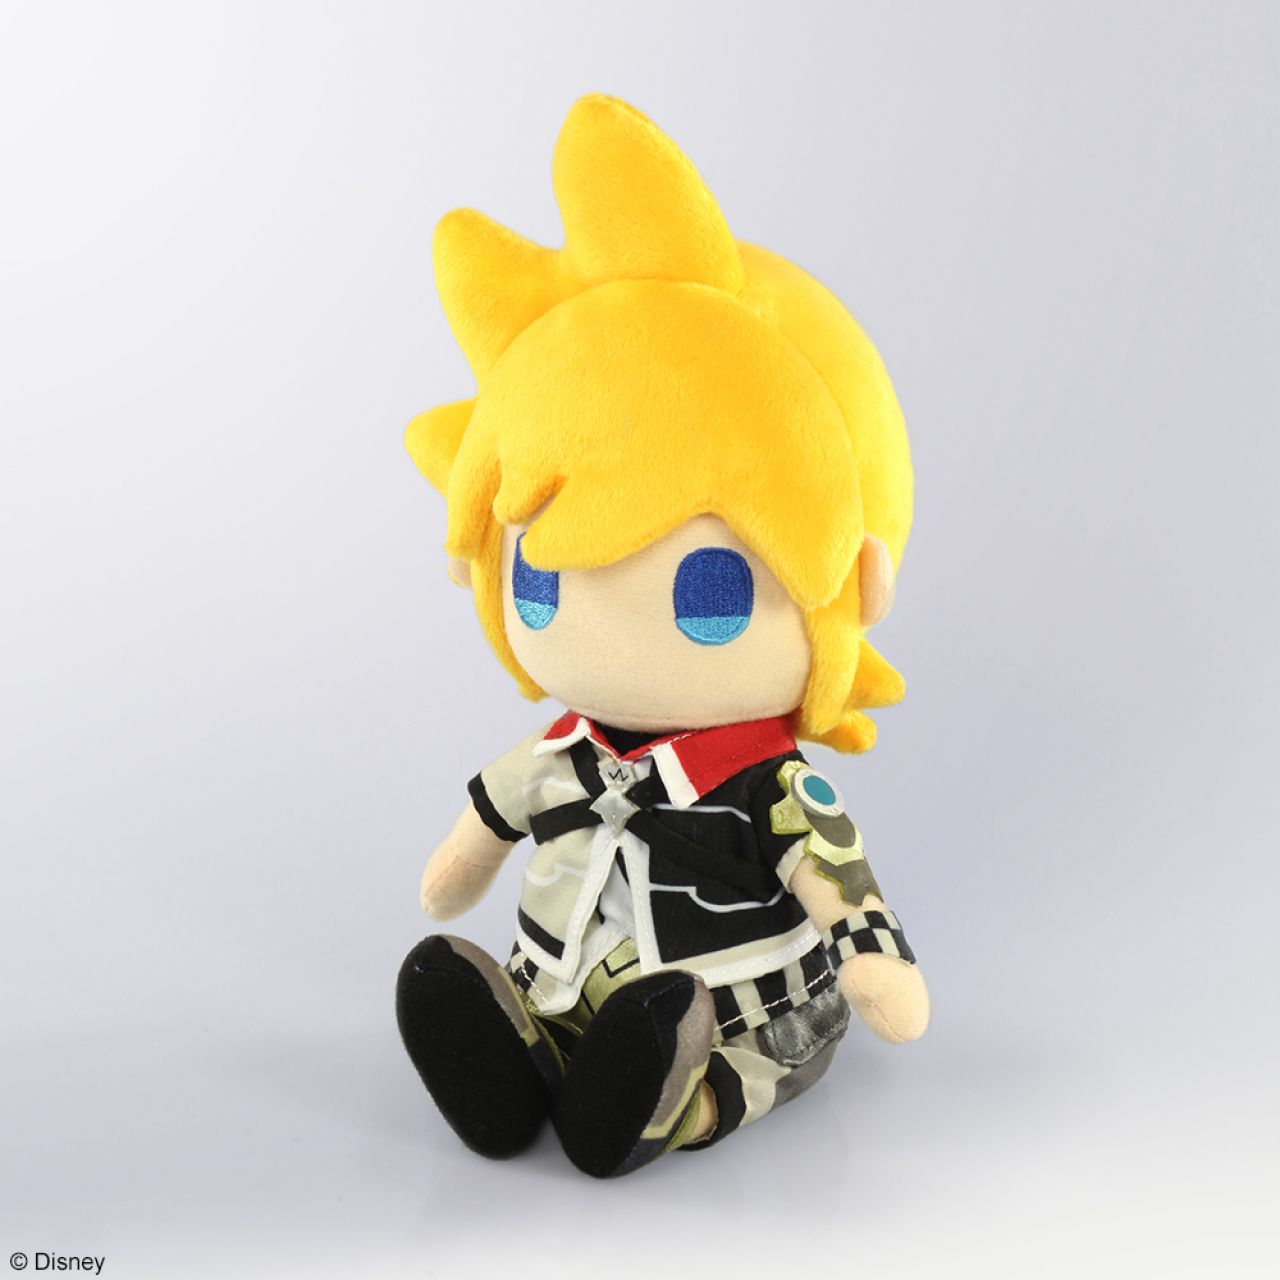 Kingdom Hearts III Ventus 8" Inch Plush Doll Square-Enix (Pre-Order)